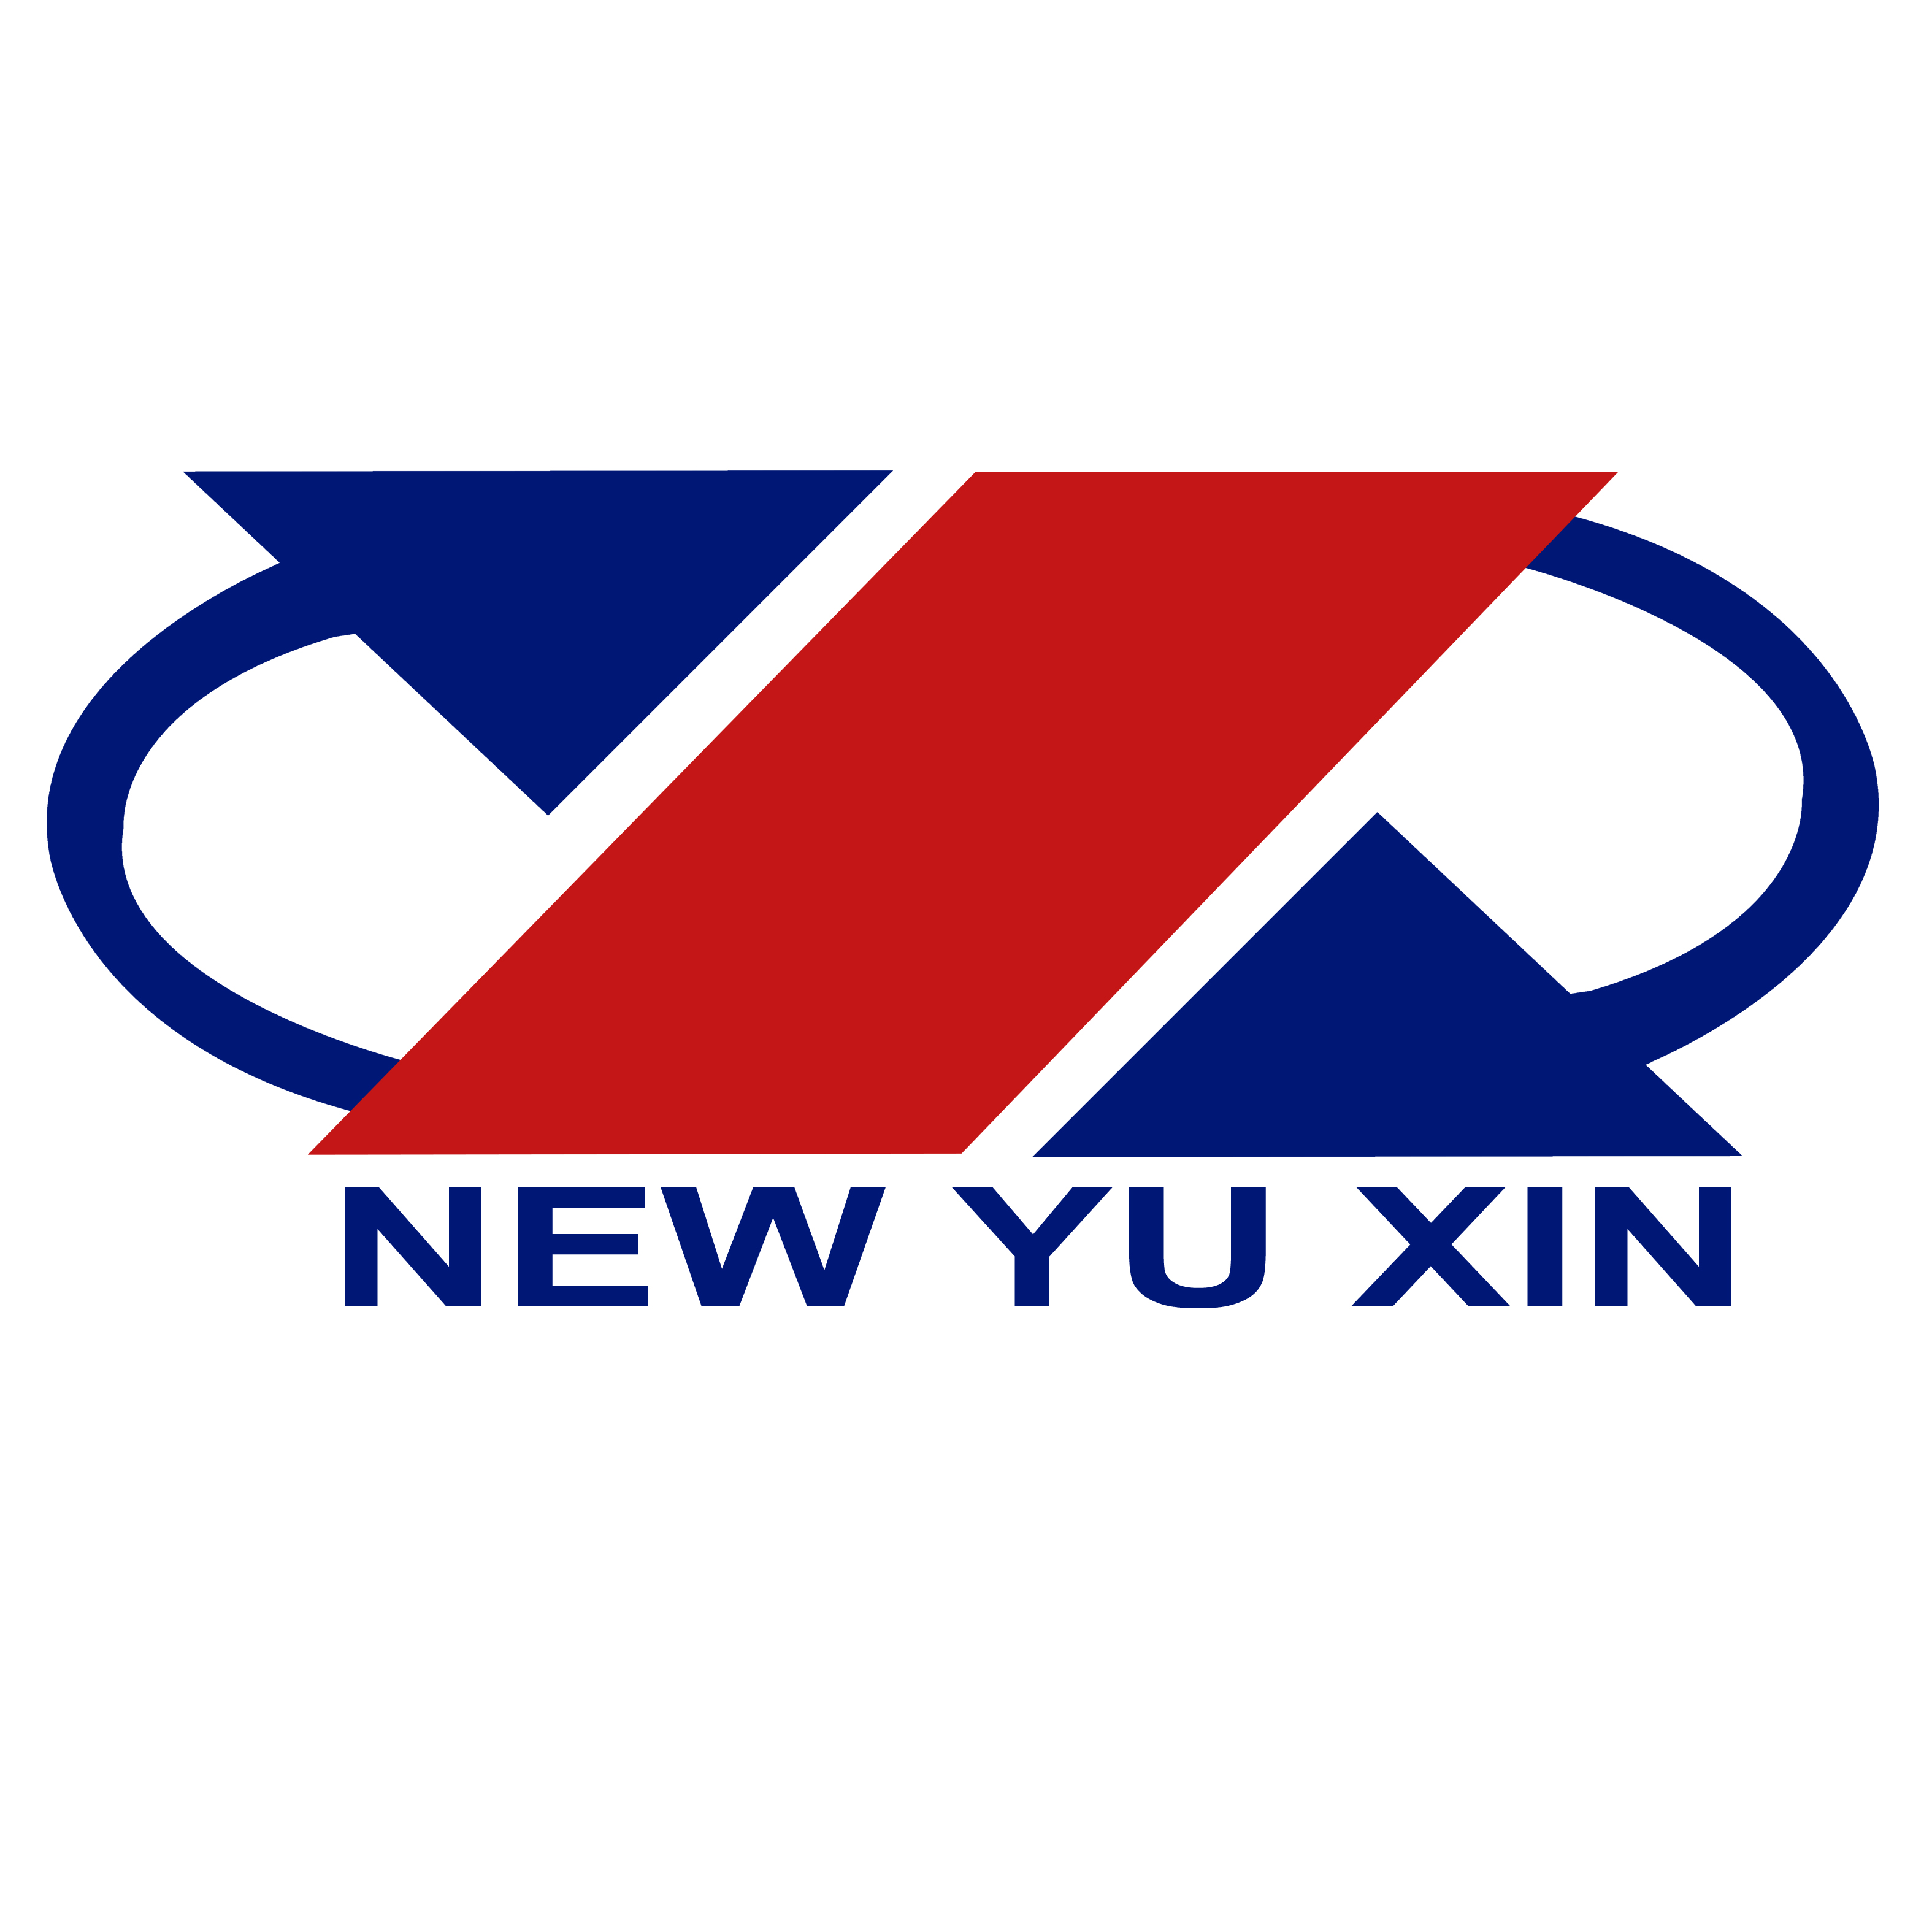 ZHANGZHOU NEW YUXIN FURNITURE CO.,LTD